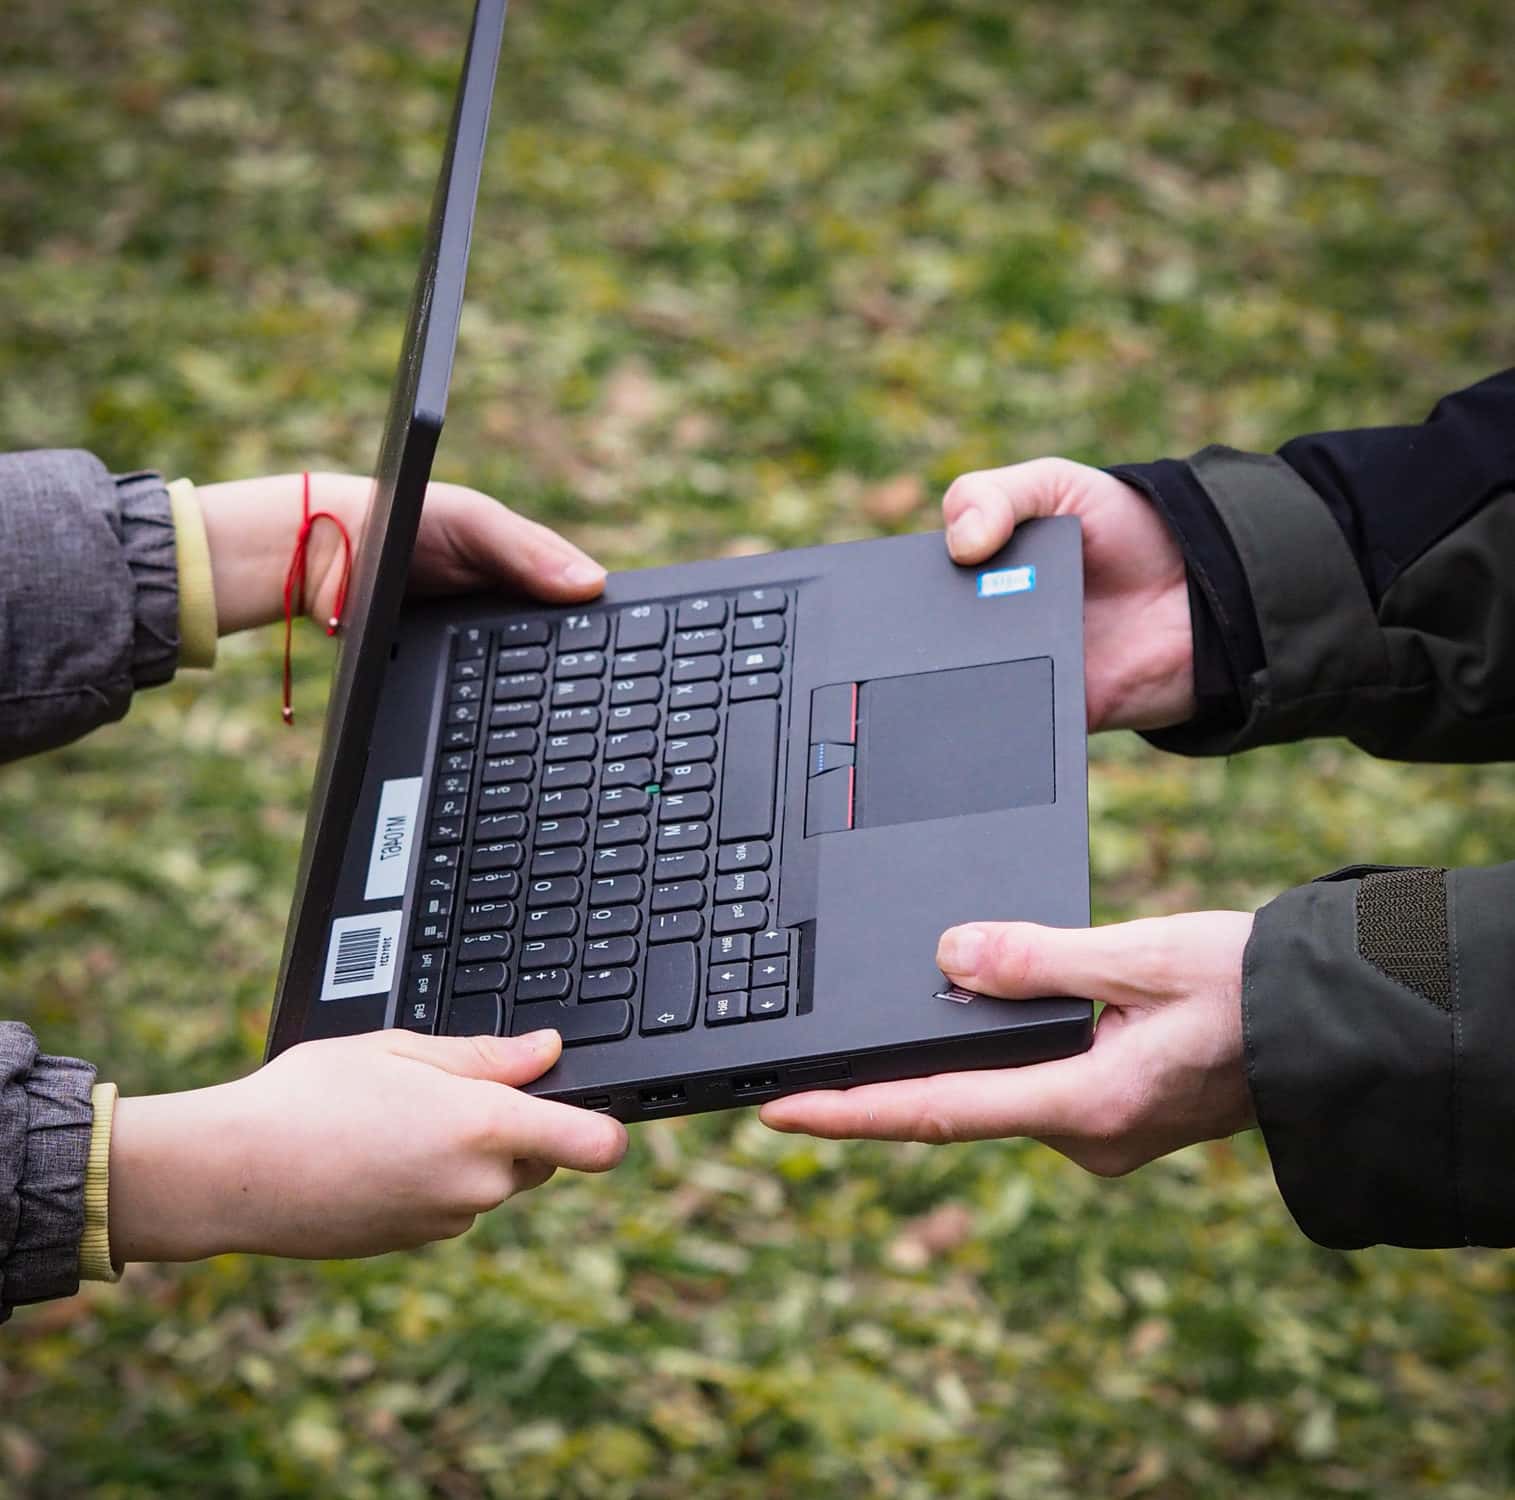 Ein Laptop wird von vier Händen gehalten, um eine Geräteübergabe bei PCs für alle darzustellen